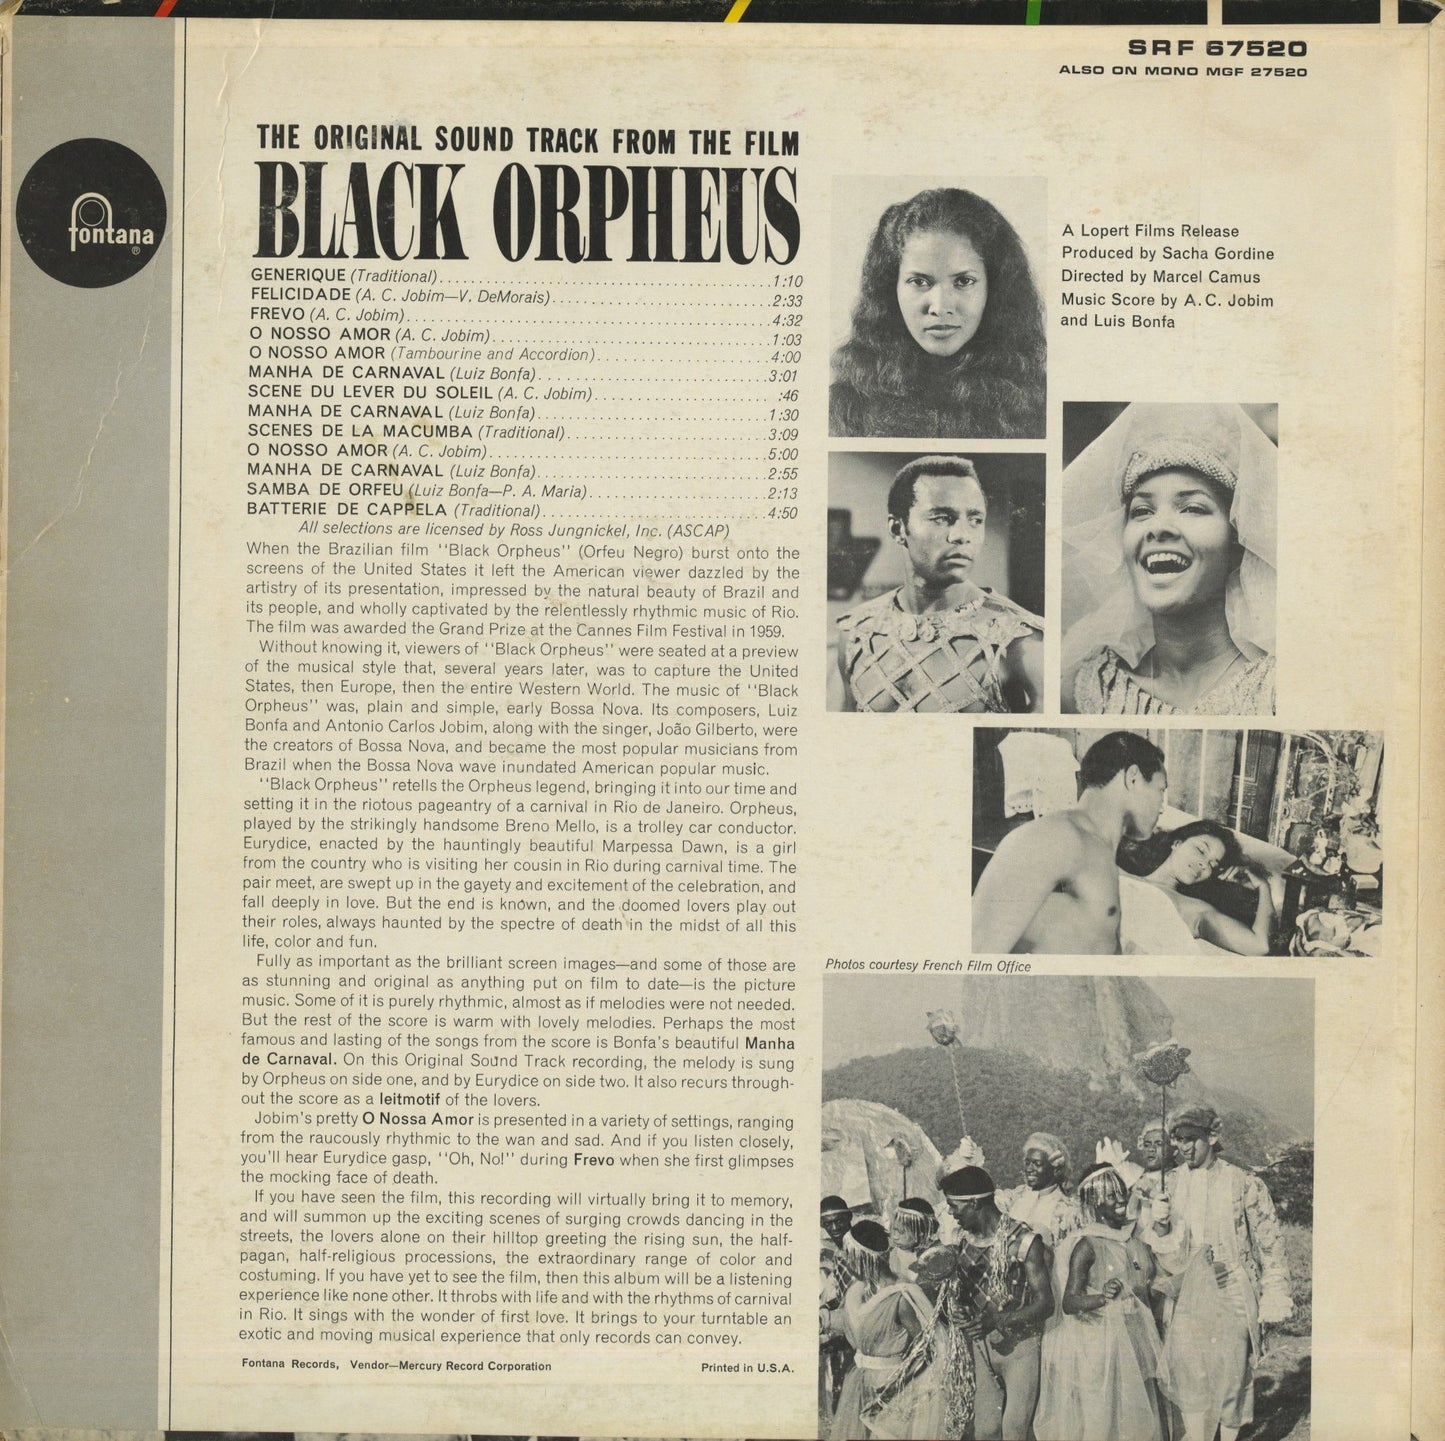 Black Orpheus -OST / Music: A.C Jobim / Luiz Bonfa (SRF 67520)